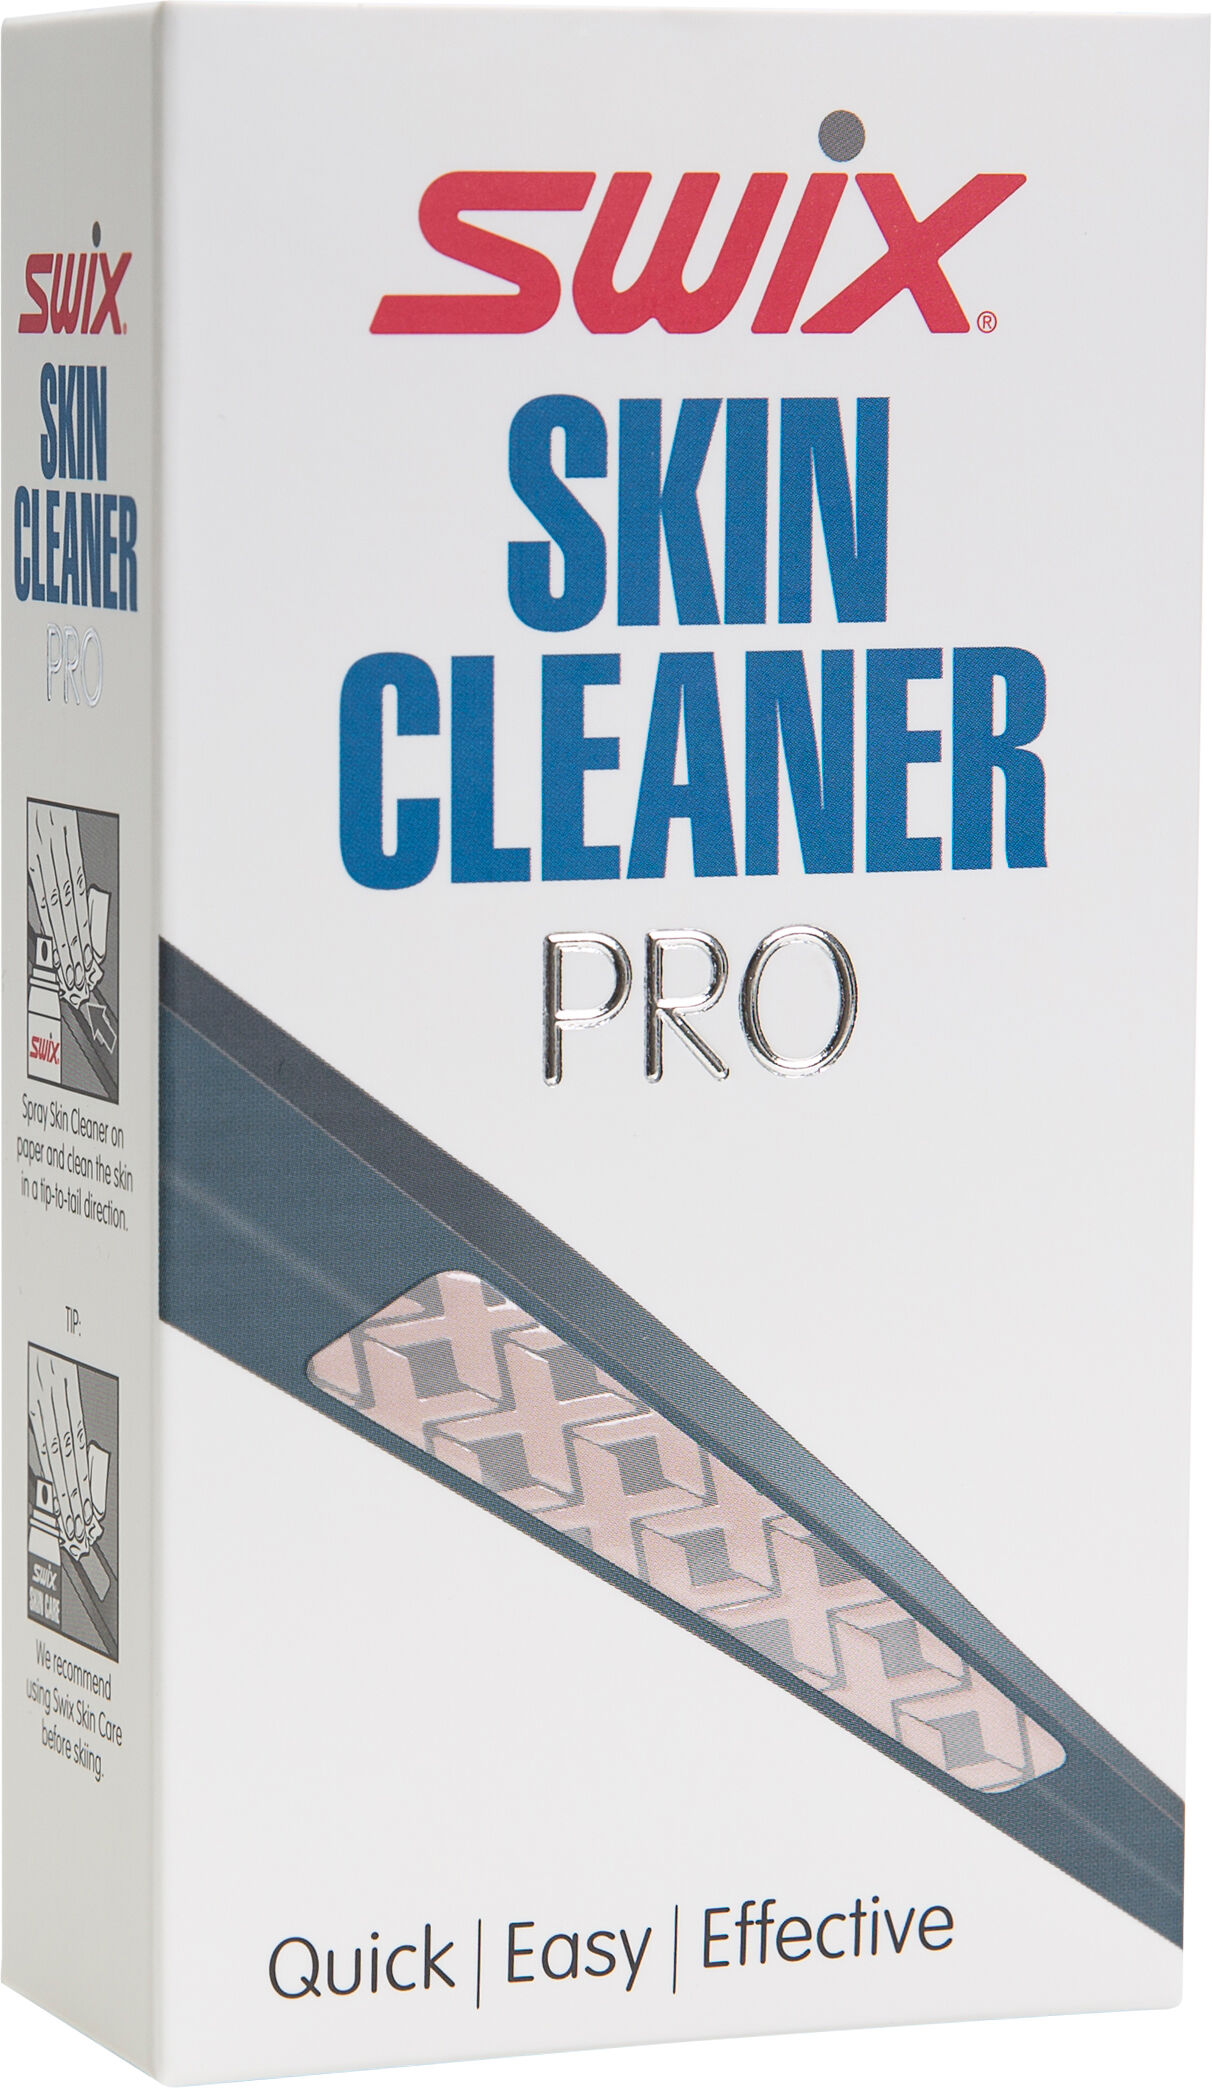 Swix Skin Cleaner Pro fellerens N18 2018